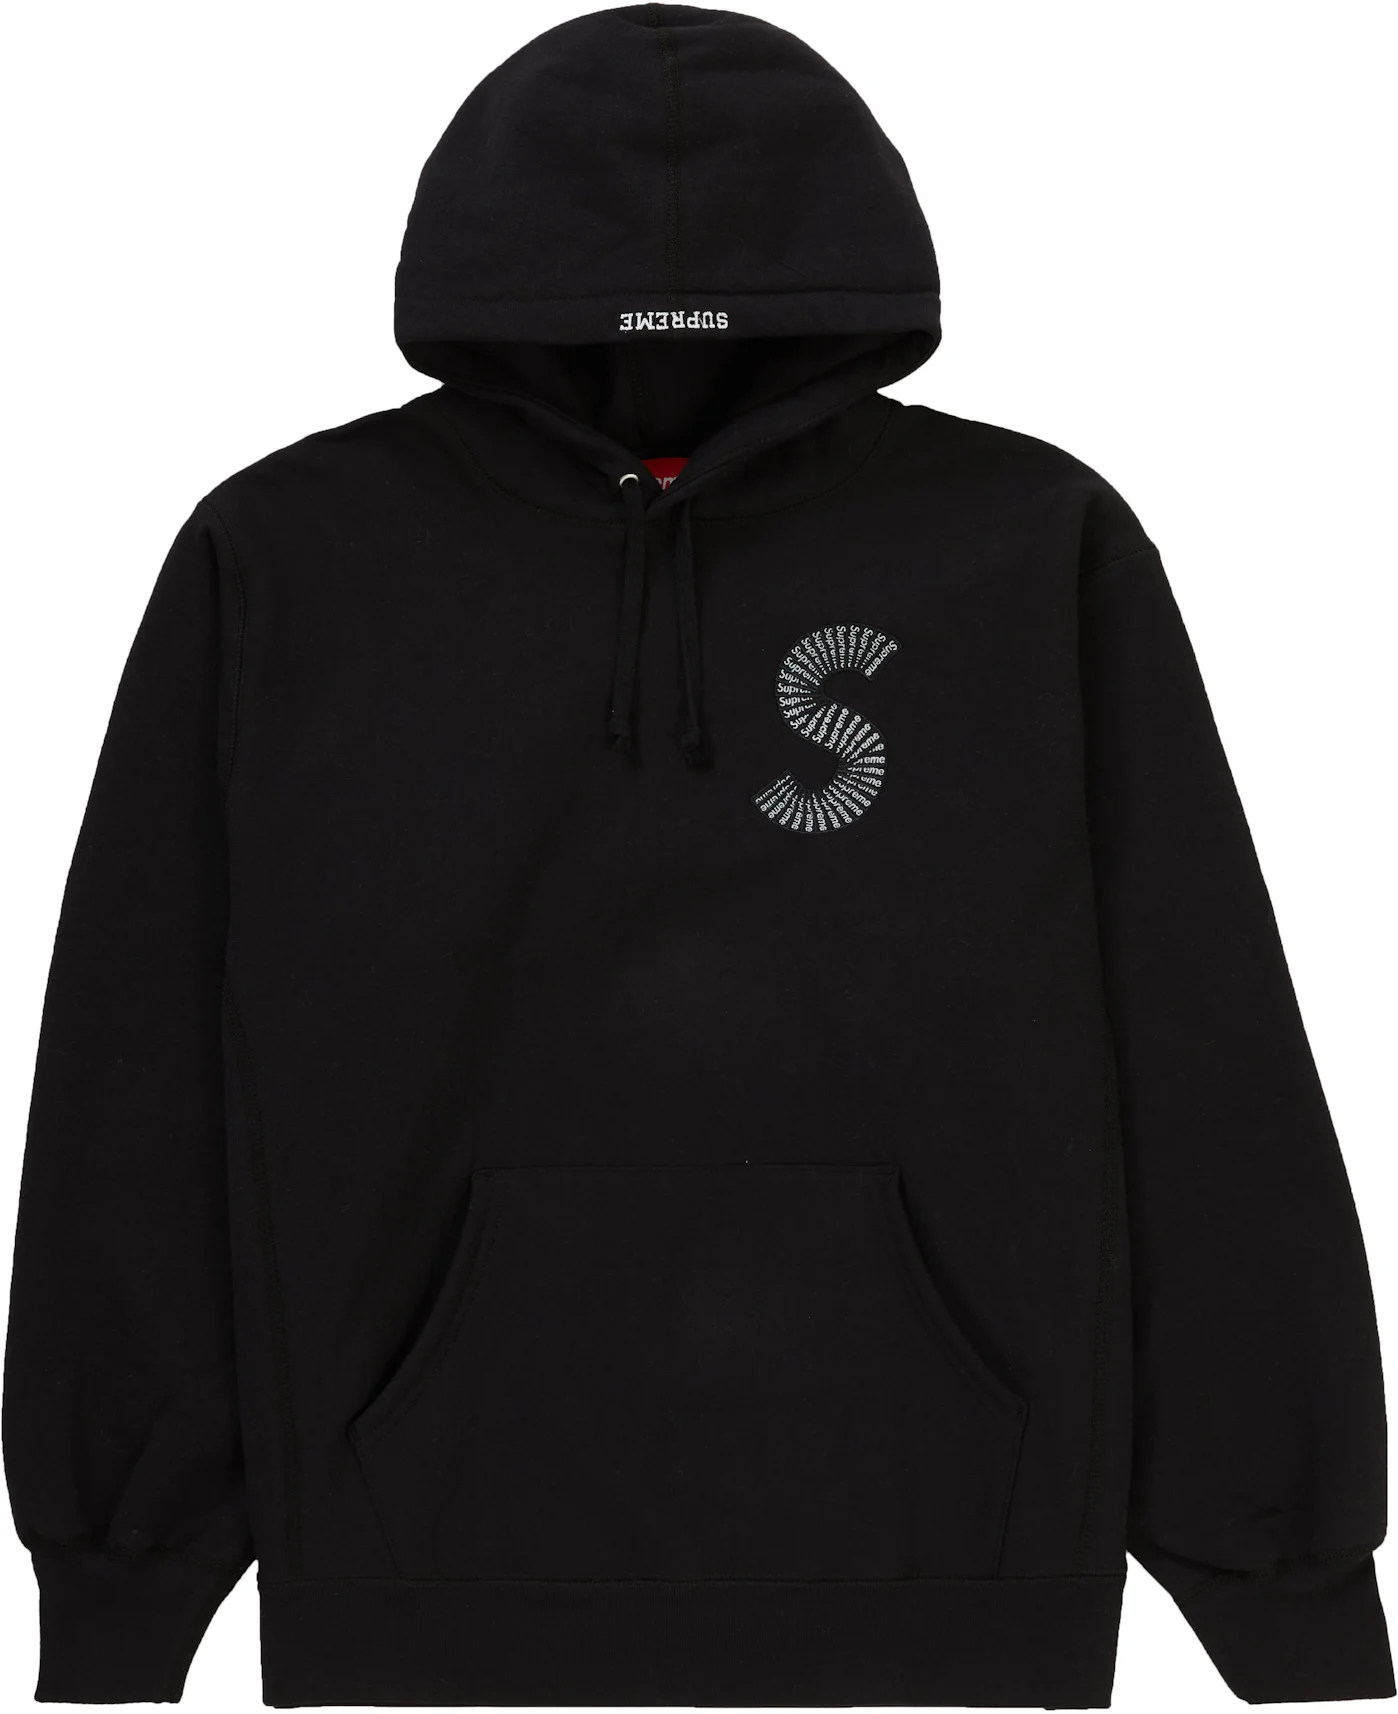 Black Printed hoodie Shoes VETEMENTS - Supreme logo hoodie Shoes Black -  Domaine-pignadaShops Oman